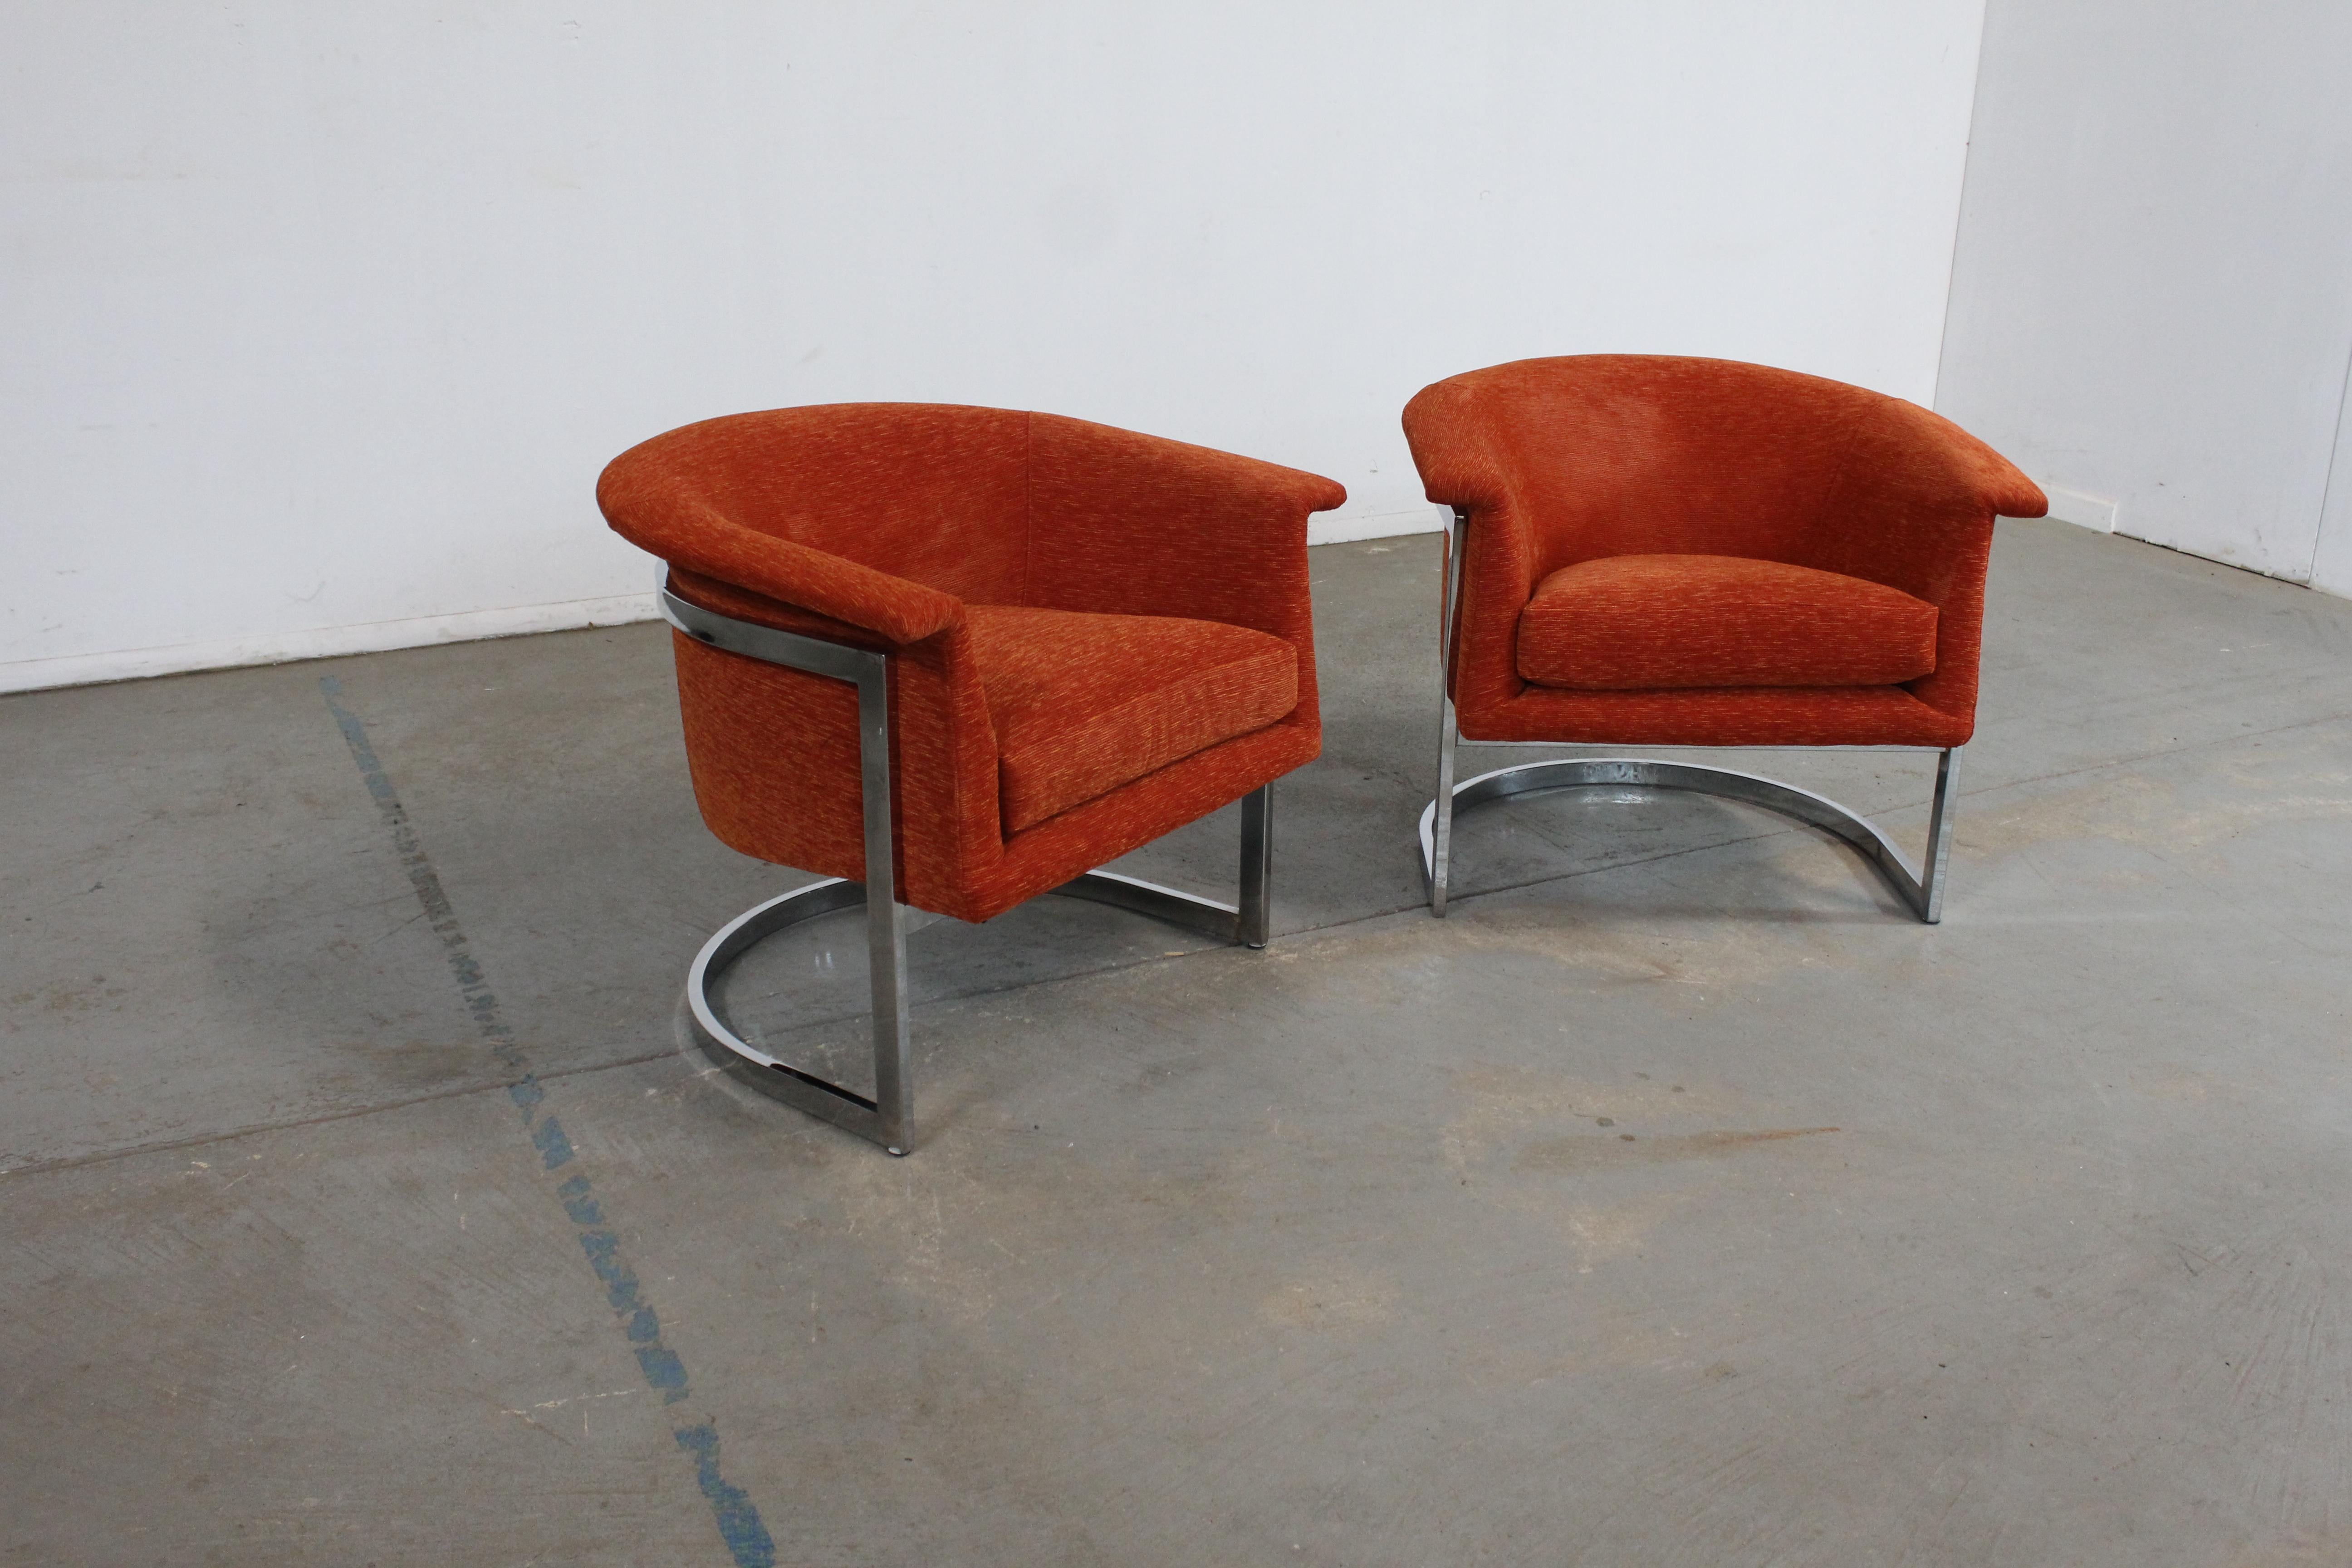 Paire de fauteuils club à dossier en forme de tonneau, de style Craft Associates, du milieu du siècle dernier, chromés

Nous vous proposons une paire de chaises de style moderne du milieu du siècle, magnifiquement restaurées, de la marque Craft